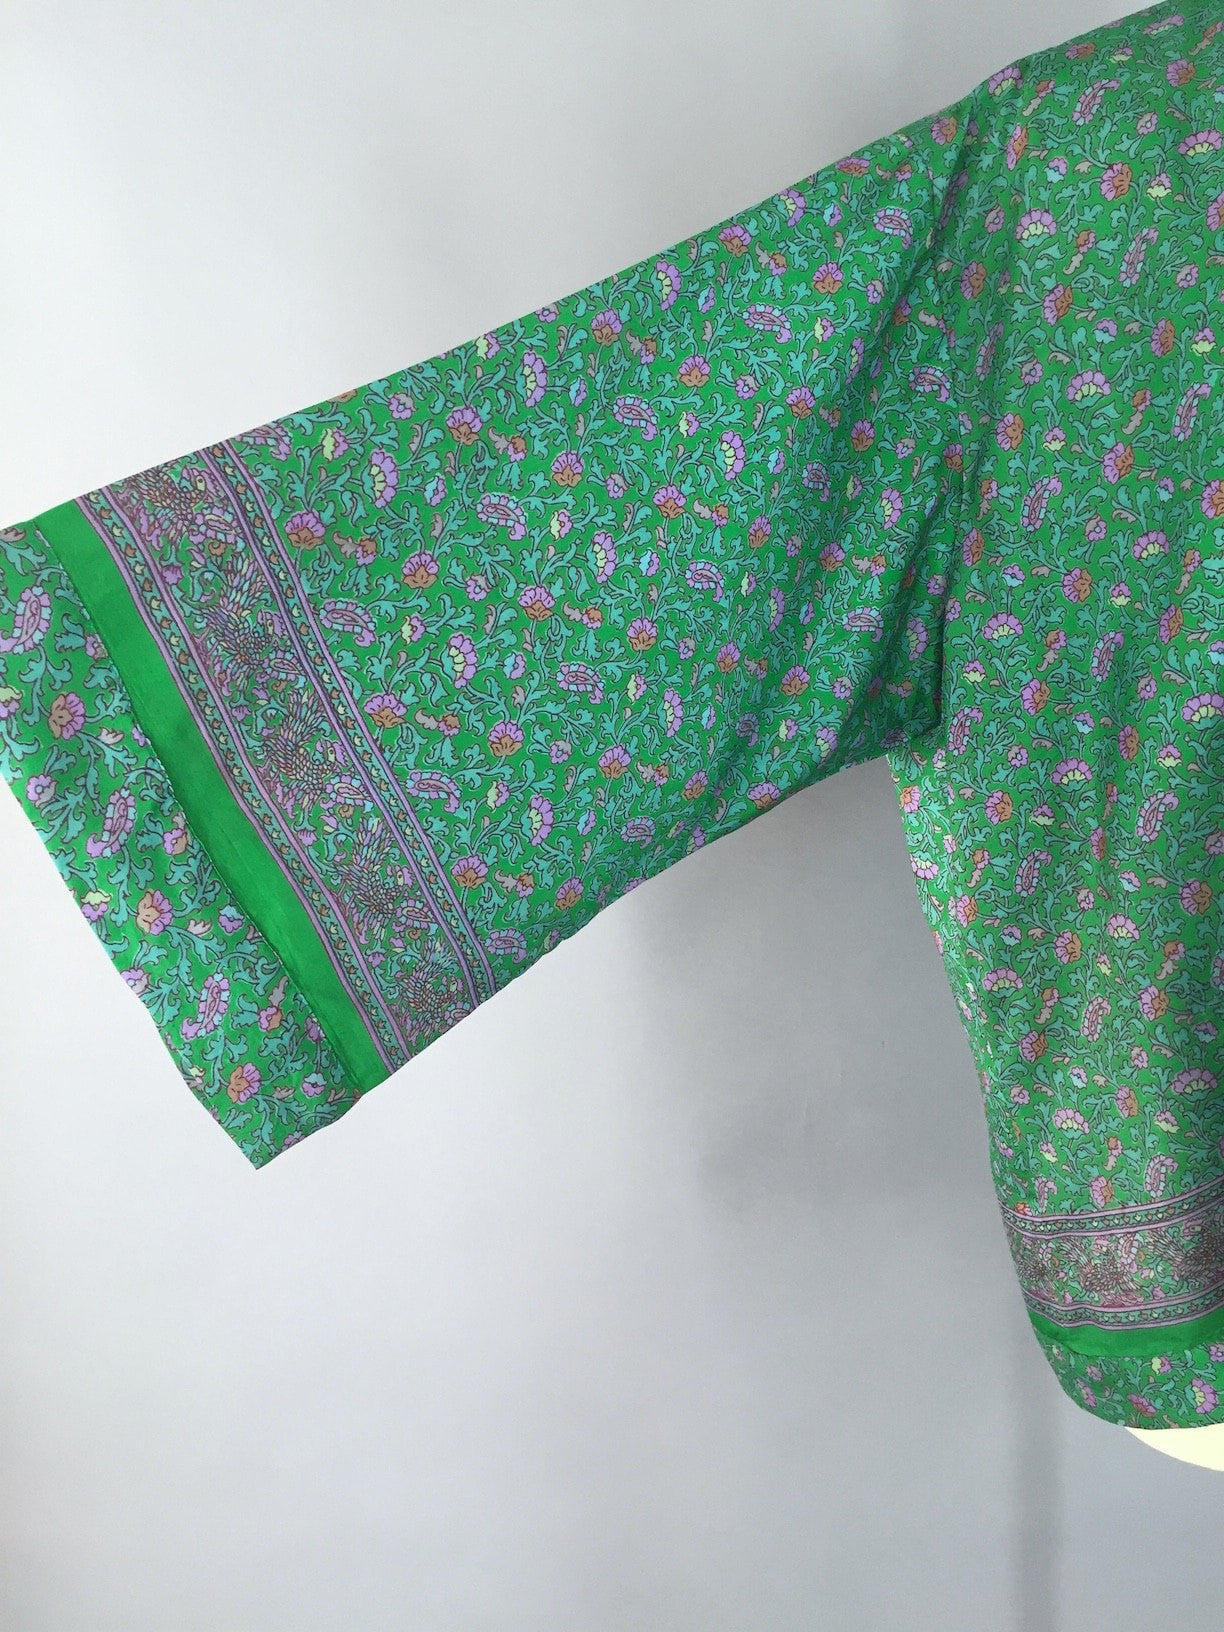 Kimono Jacket / Vintage Indian Sari / Green Floral Print - ThisBlueBird